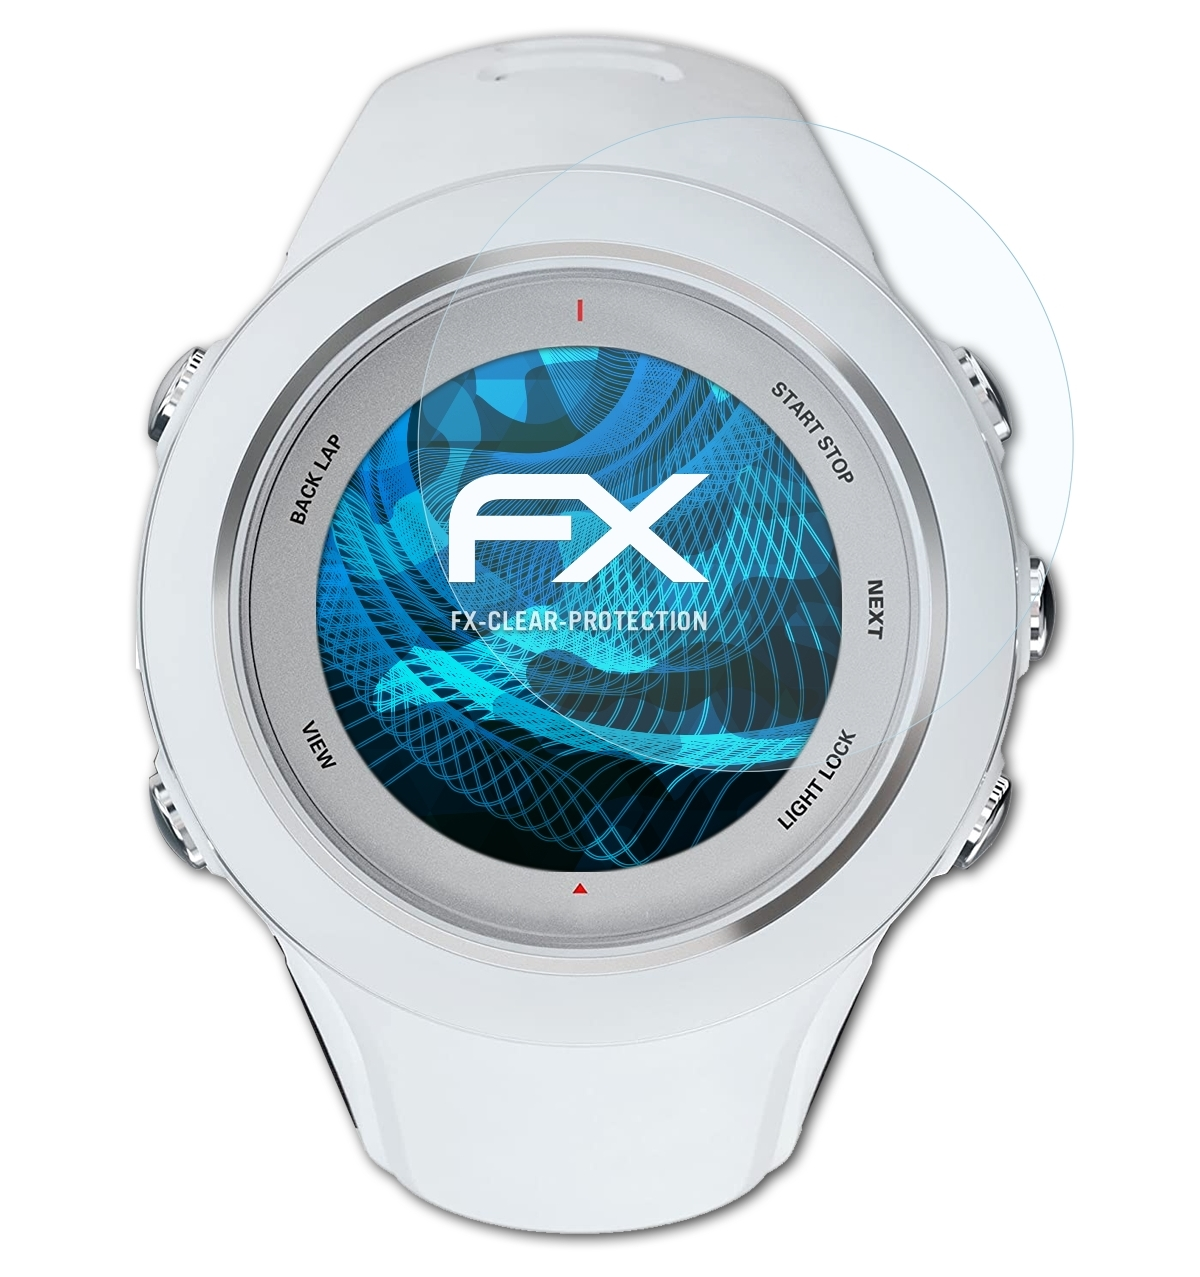 ATFOLIX 3x FX-Clear Displayschutz(für Suunto Multisport) Ambit3